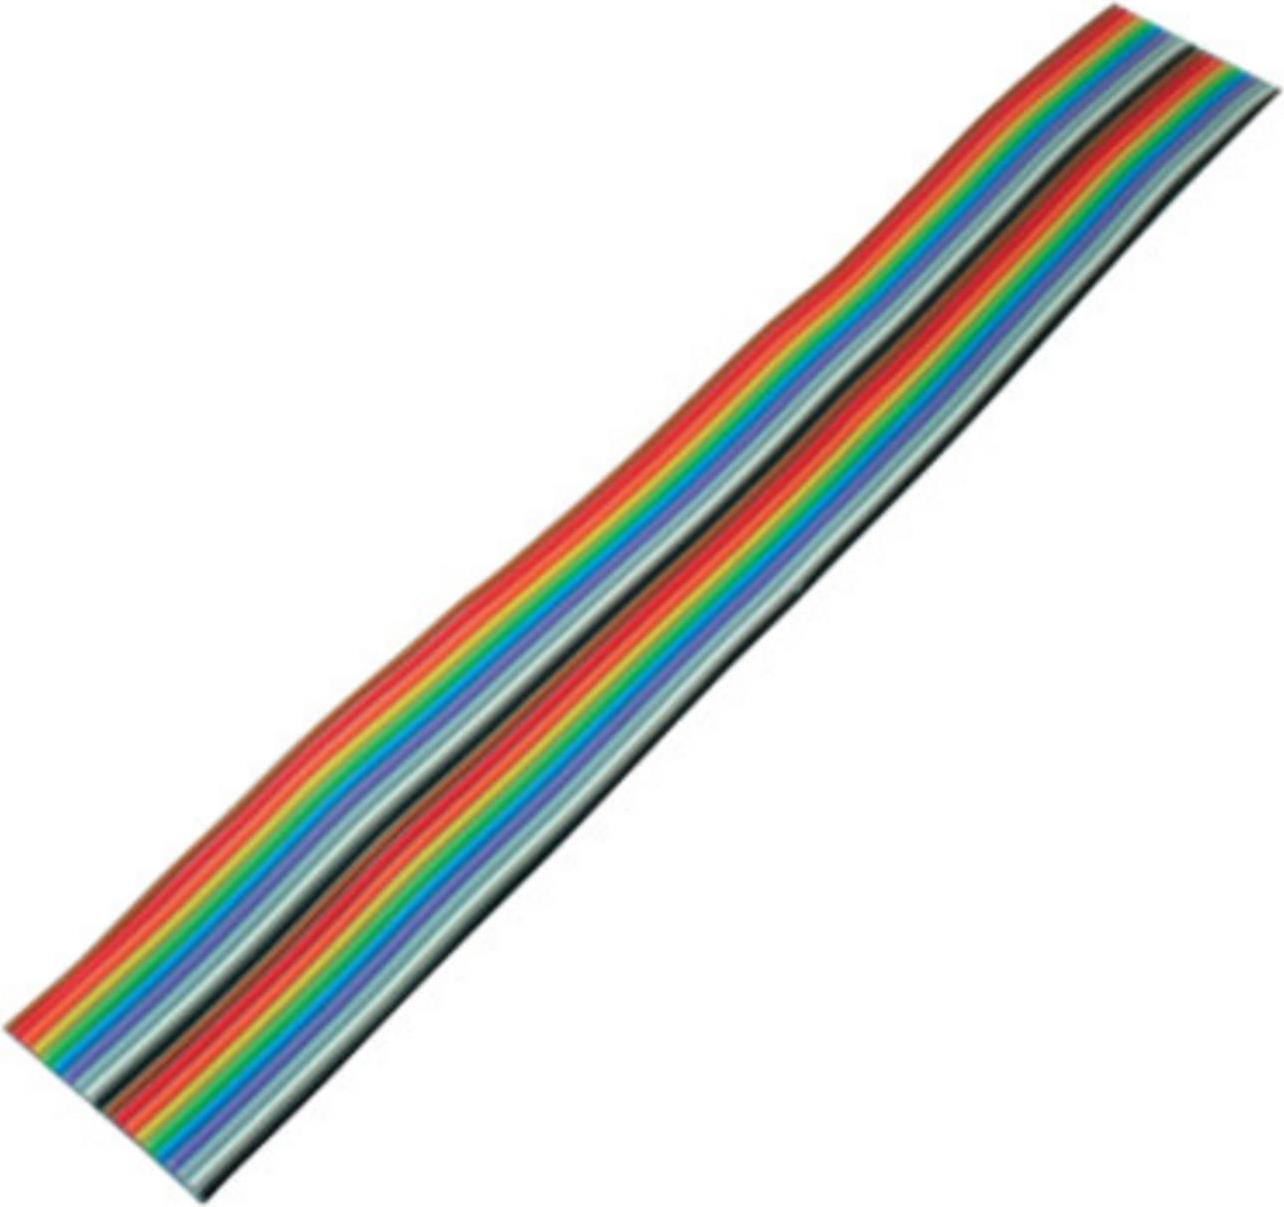 S-CONN S/CONN maximum connectivity Flachkabel, farbig Raster 1,27 mm, 20 pin, 3,0m (79066-3)